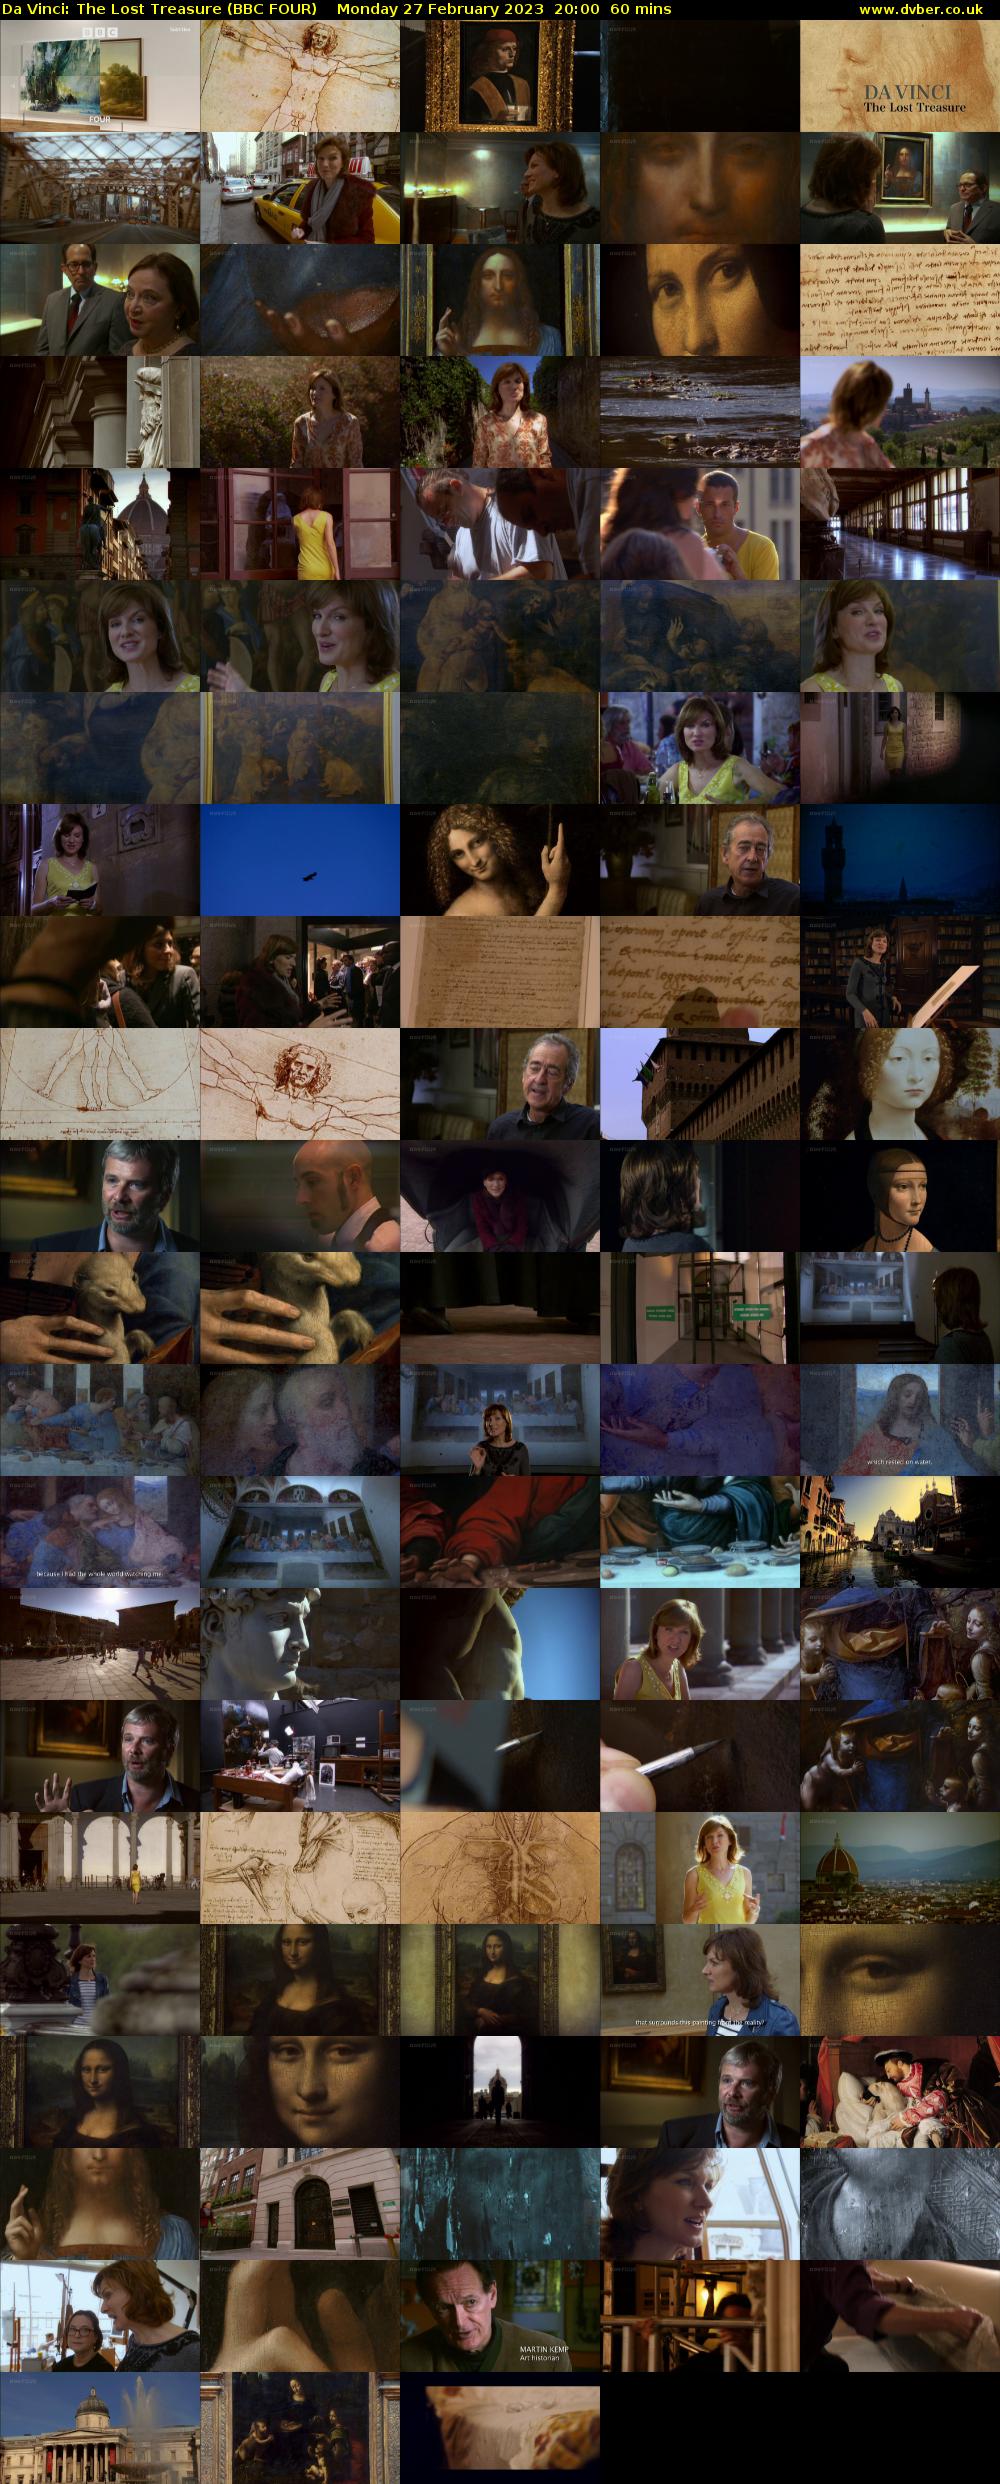 Da Vinci: The Lost Treasure (BBC FOUR) Monday 27 February 2023 20:00 - 21:00